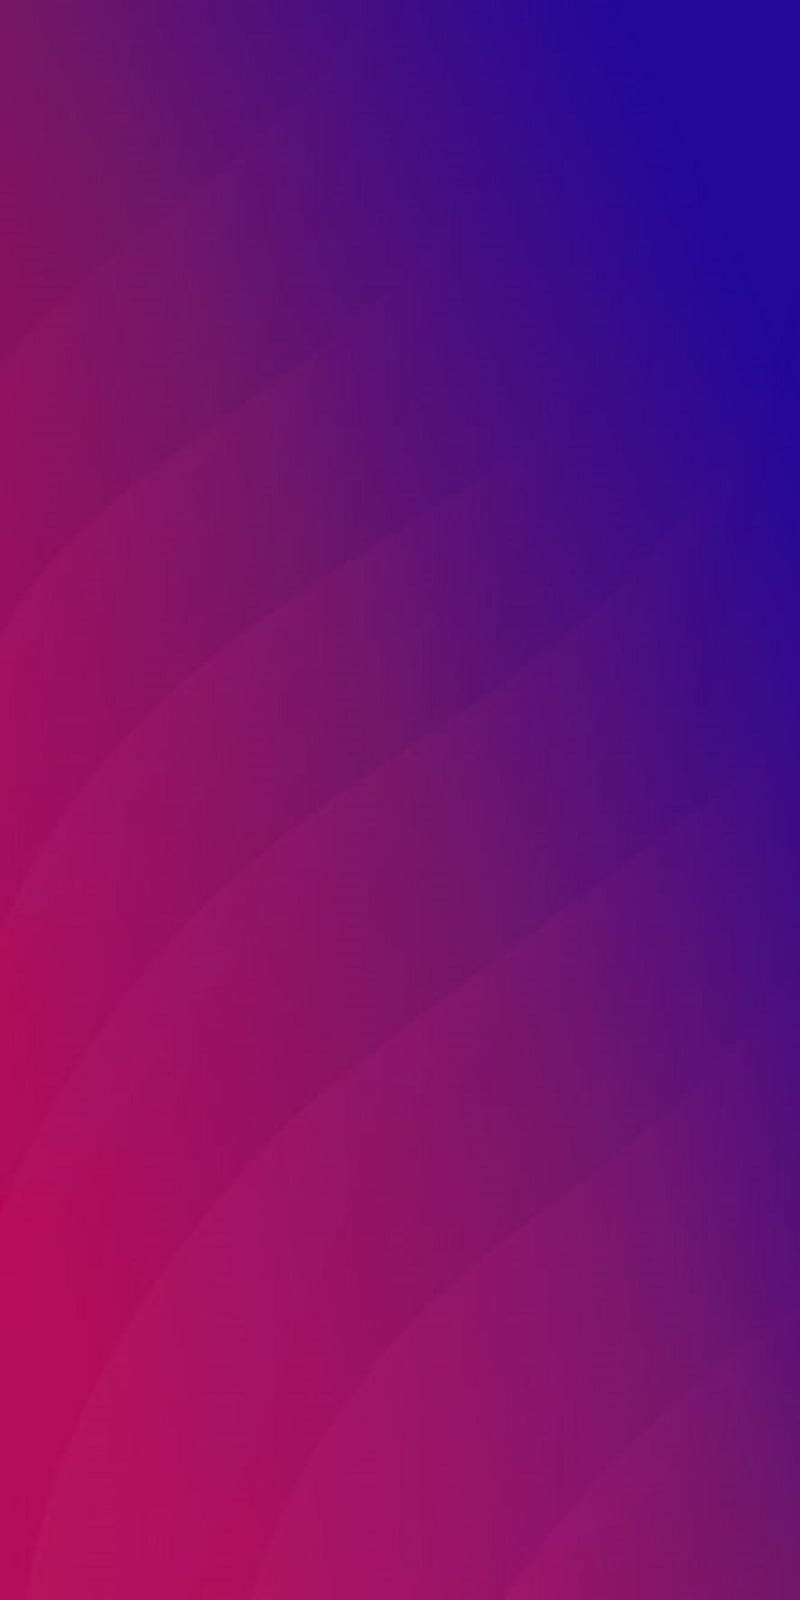 Với chiếc Oppo Find X có màu sắc đầy cá tính, hãy thể hiện sự khác biệt của bạn bằng bức hình nền \